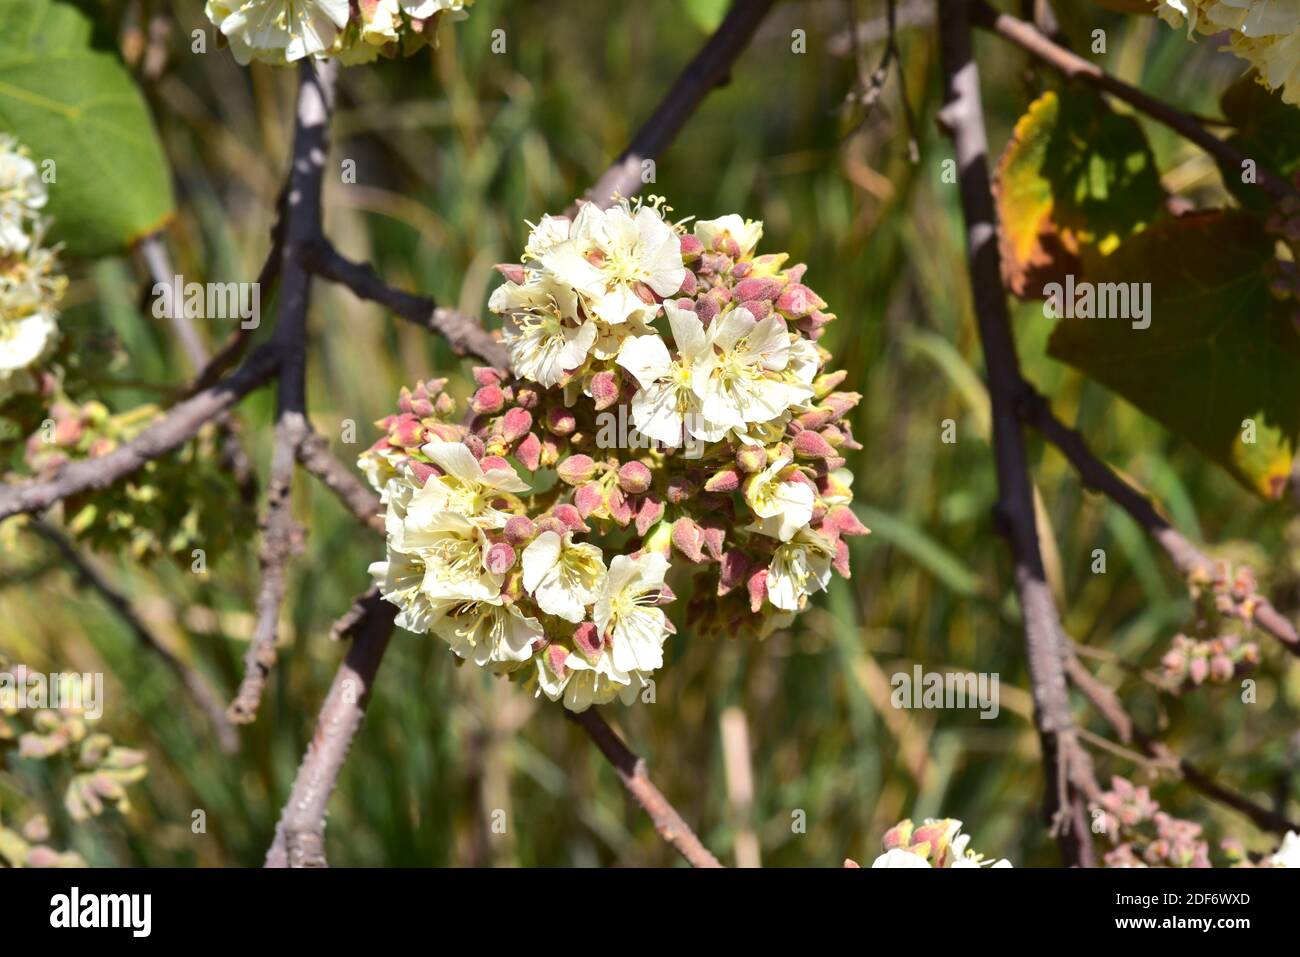 Dikbas oder afrikanische Wildbirne (Dombeya rotundifolia) ist ein kleiner Laub- und Heilbaum, der im südlichen Afrika beheimatet ist. Blütenstände Detail. Stockfoto